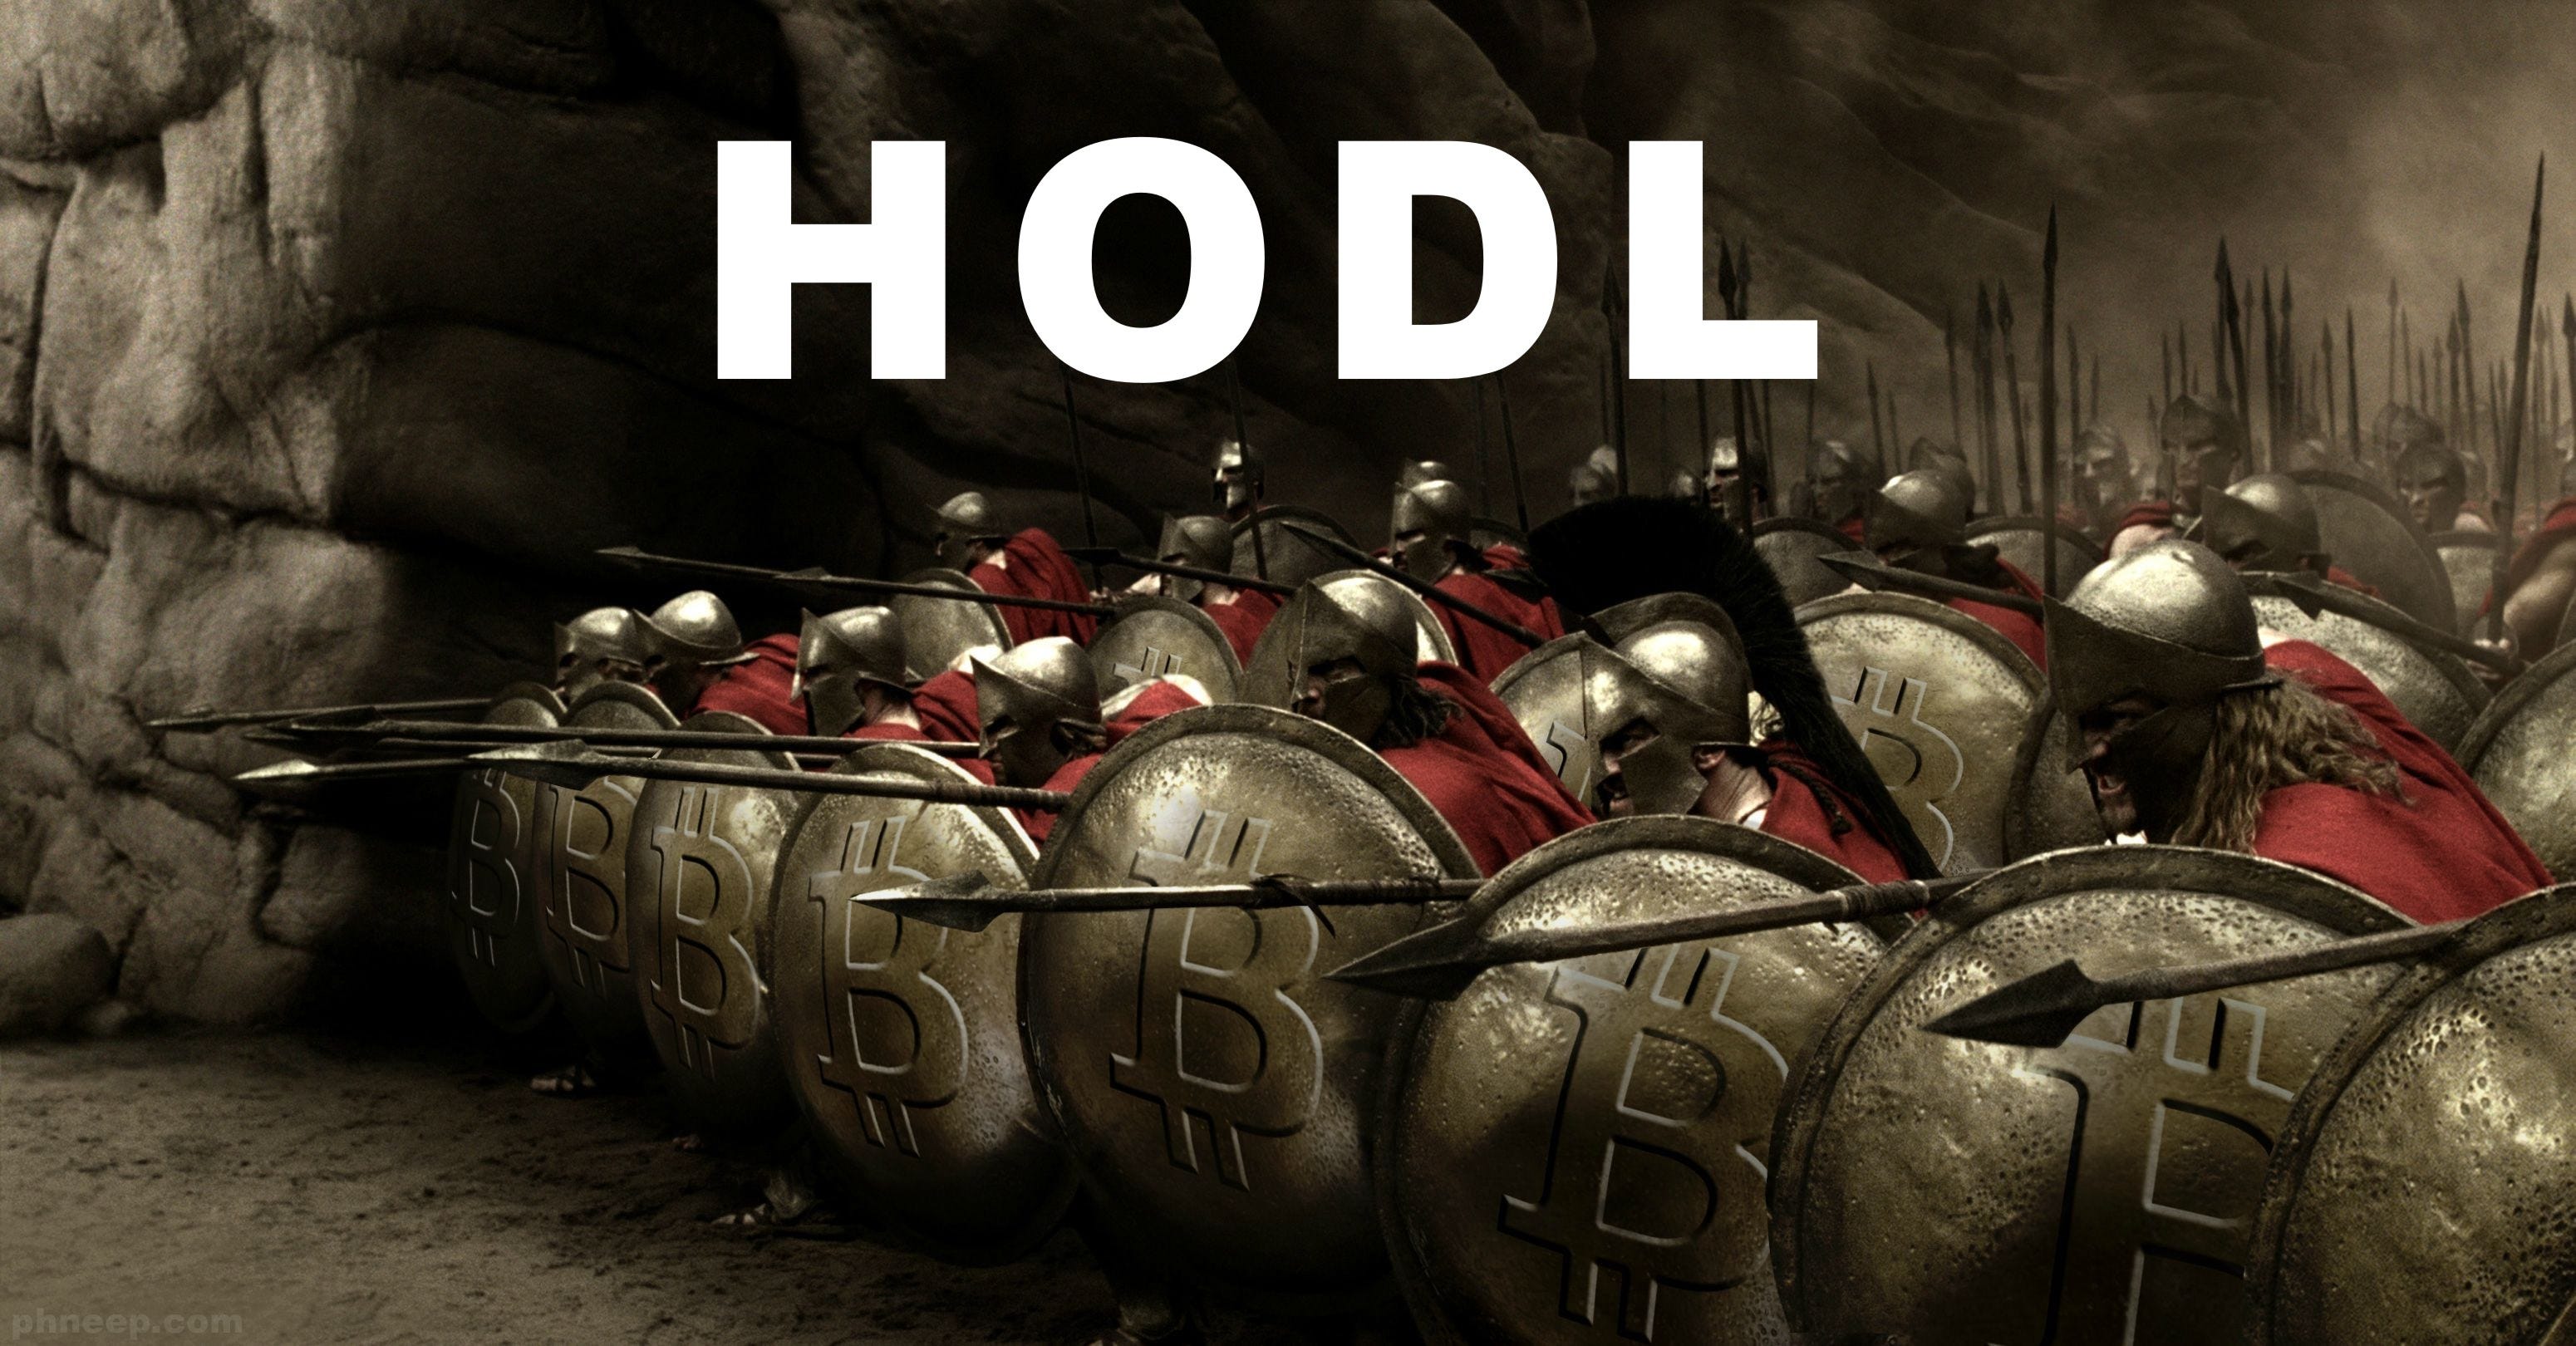 Биткоин HODL: Есть ли предел роста стоимости биткоина? | by Сергей Базанов  | Bitcoin Review | Medium